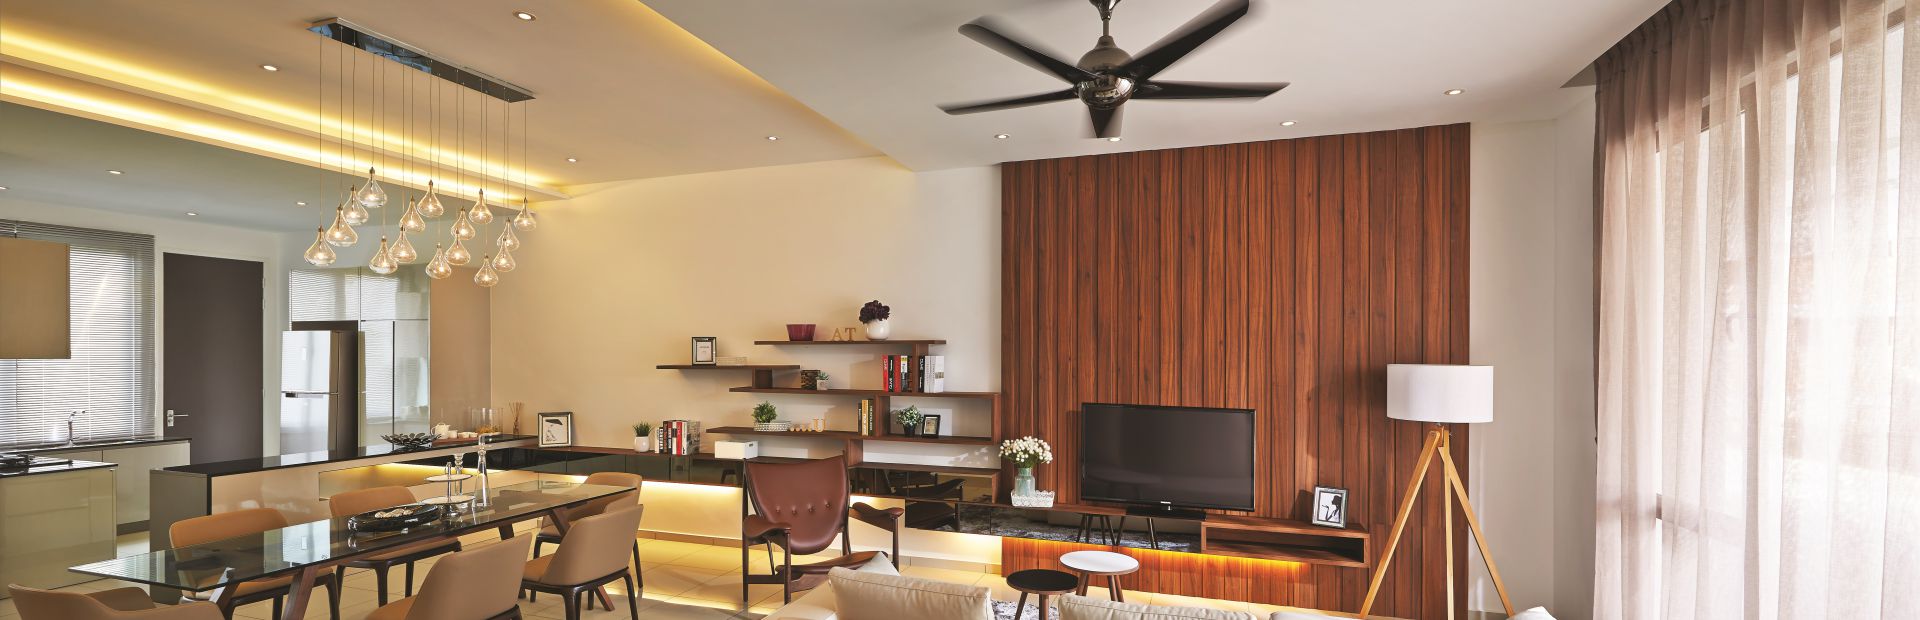 living room showroom by Airmas